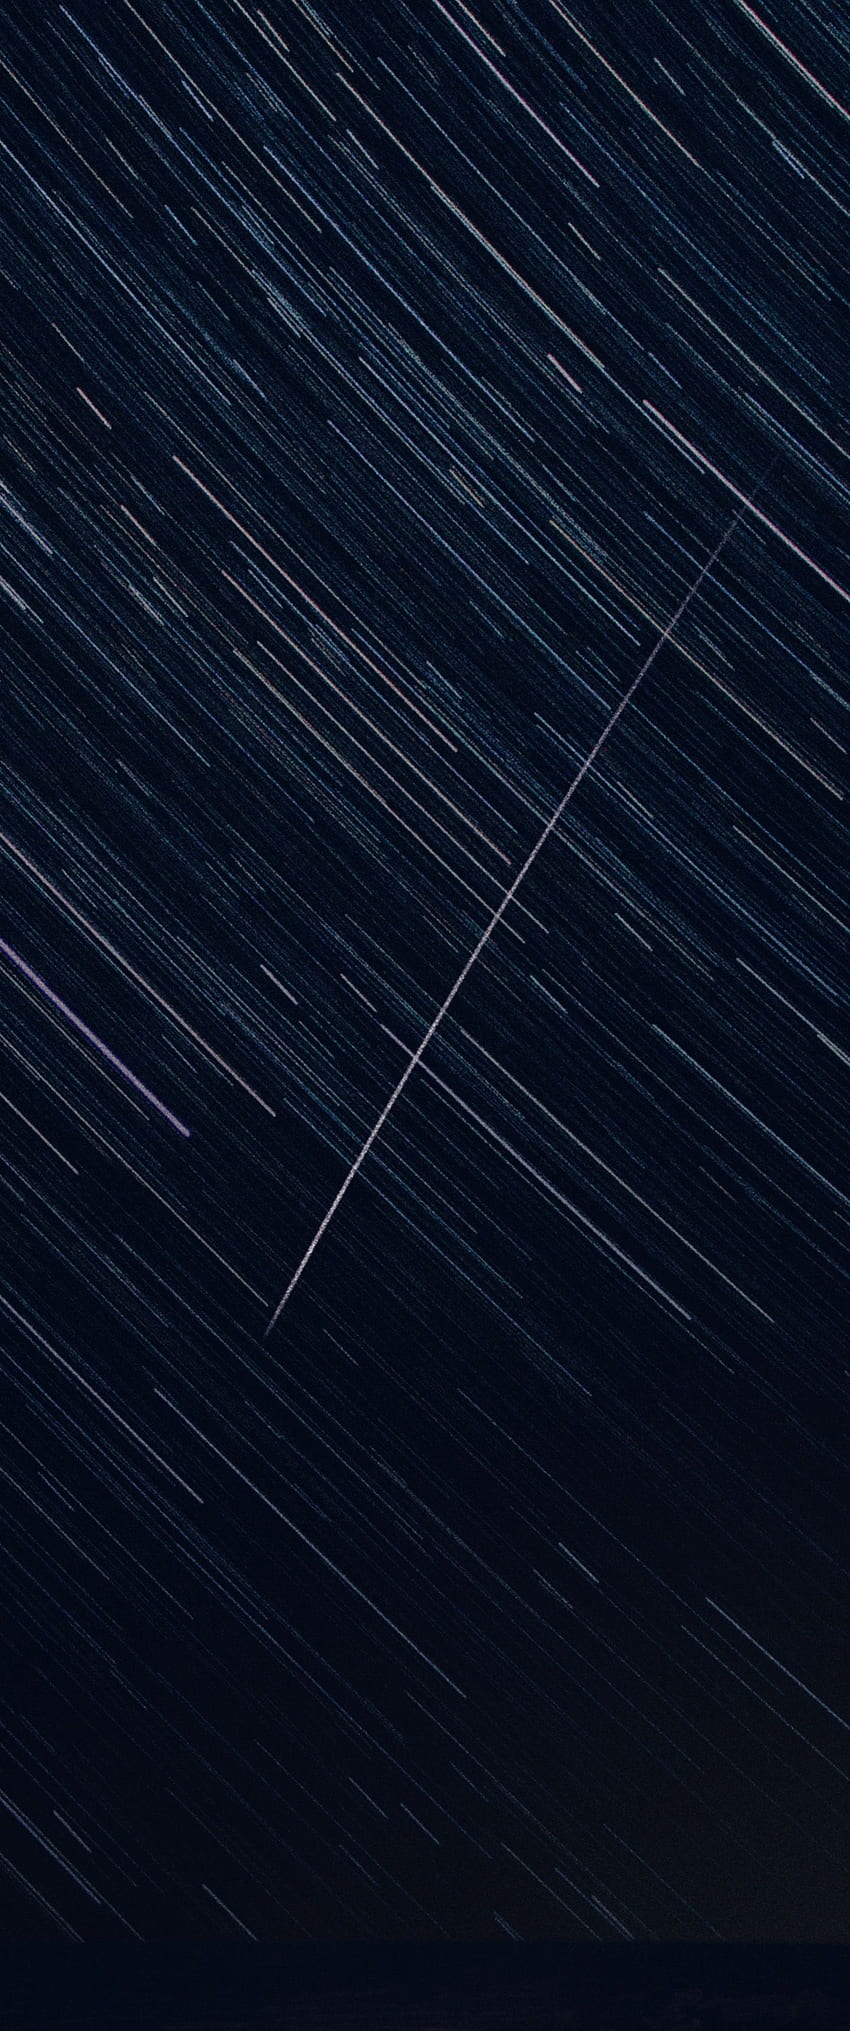 Rotación de estrella fugaz Vertical 21:9. Ultra ancho fondo de pantalla del teléfono